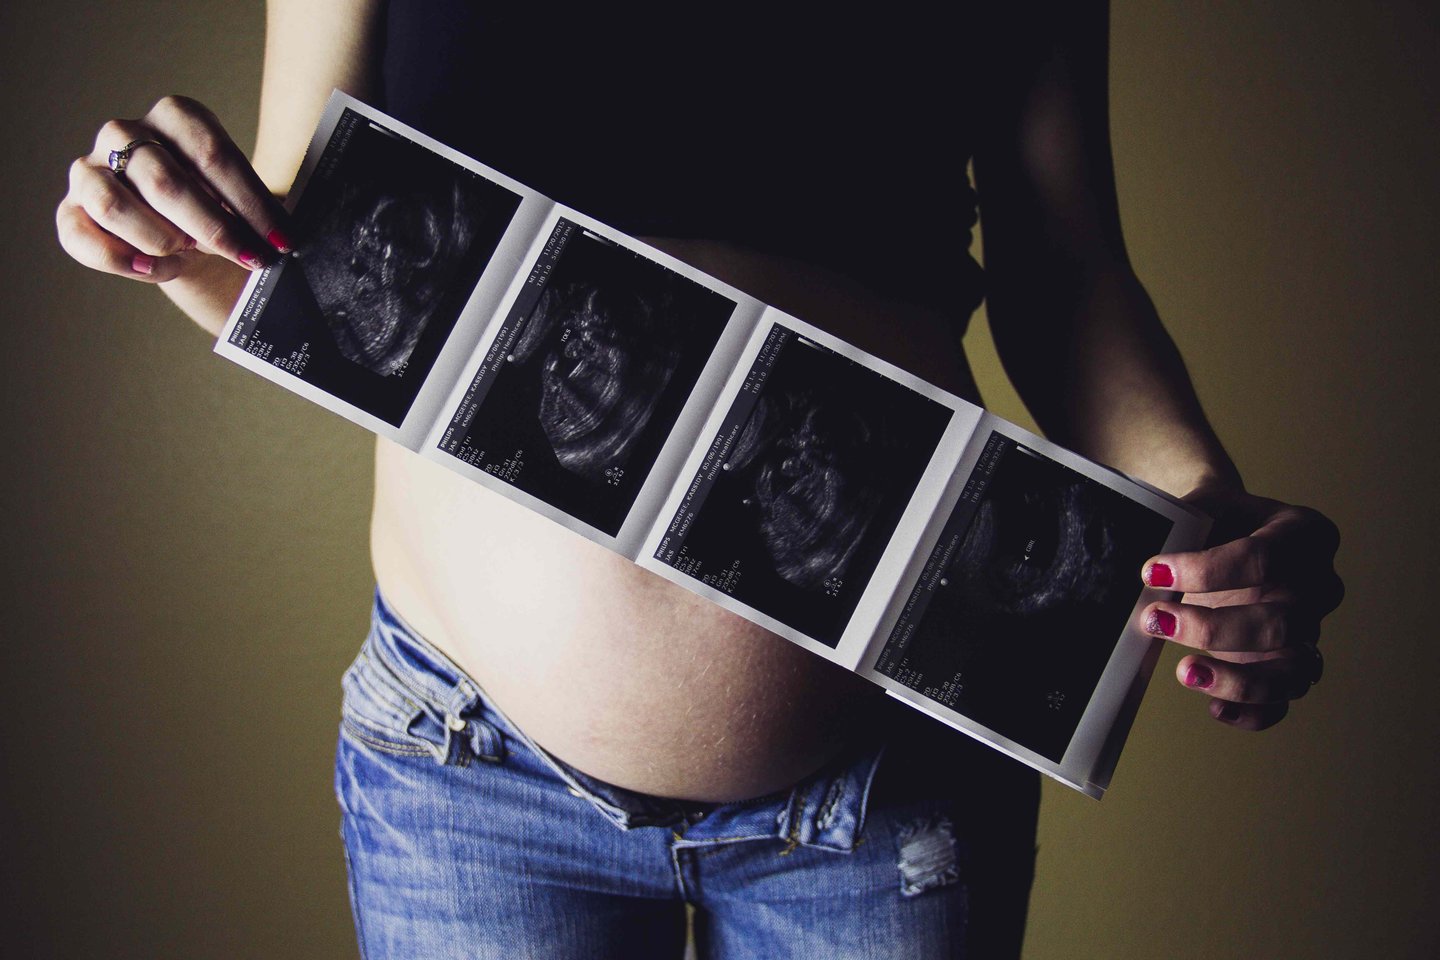 Įvairių klausimų turi ne tik planuojančios nėštumą, bet ir pastojusios moterys, o ypač tos, kurios pastojo neplanuotai – žinant atsakymus į dažniausius klausimus nėštumo laikotarpis gali praeiti daug sklandžiau, patiriant mažiau nerimo.<br> „Unsplash“ nuotr.